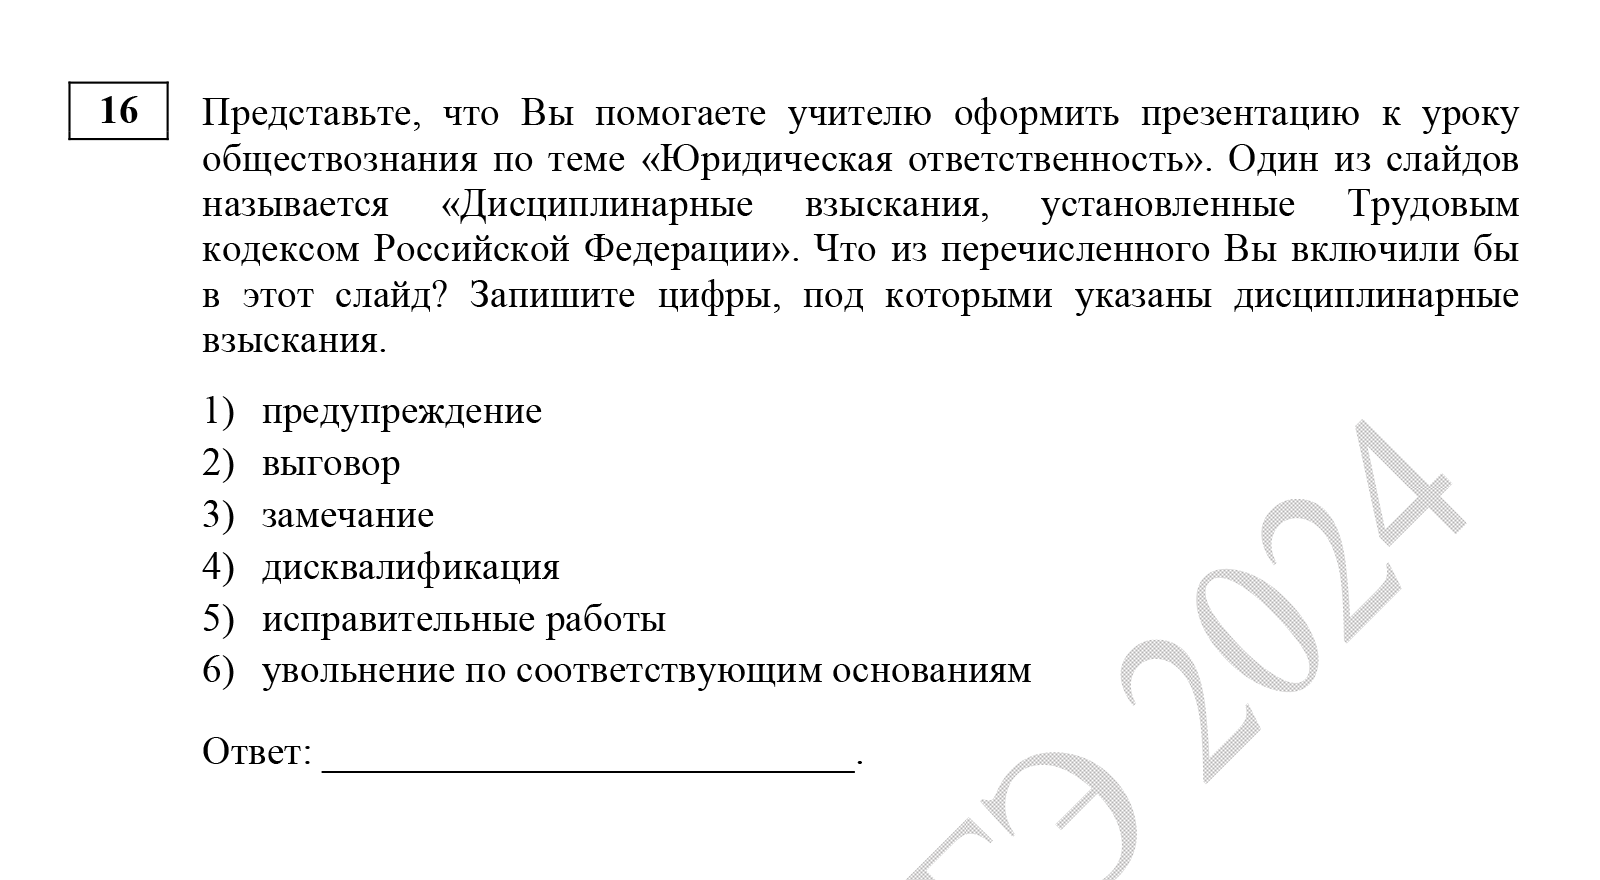 В другом задании проверяют общие знания трудового кодекса. Источник: fipi.ru